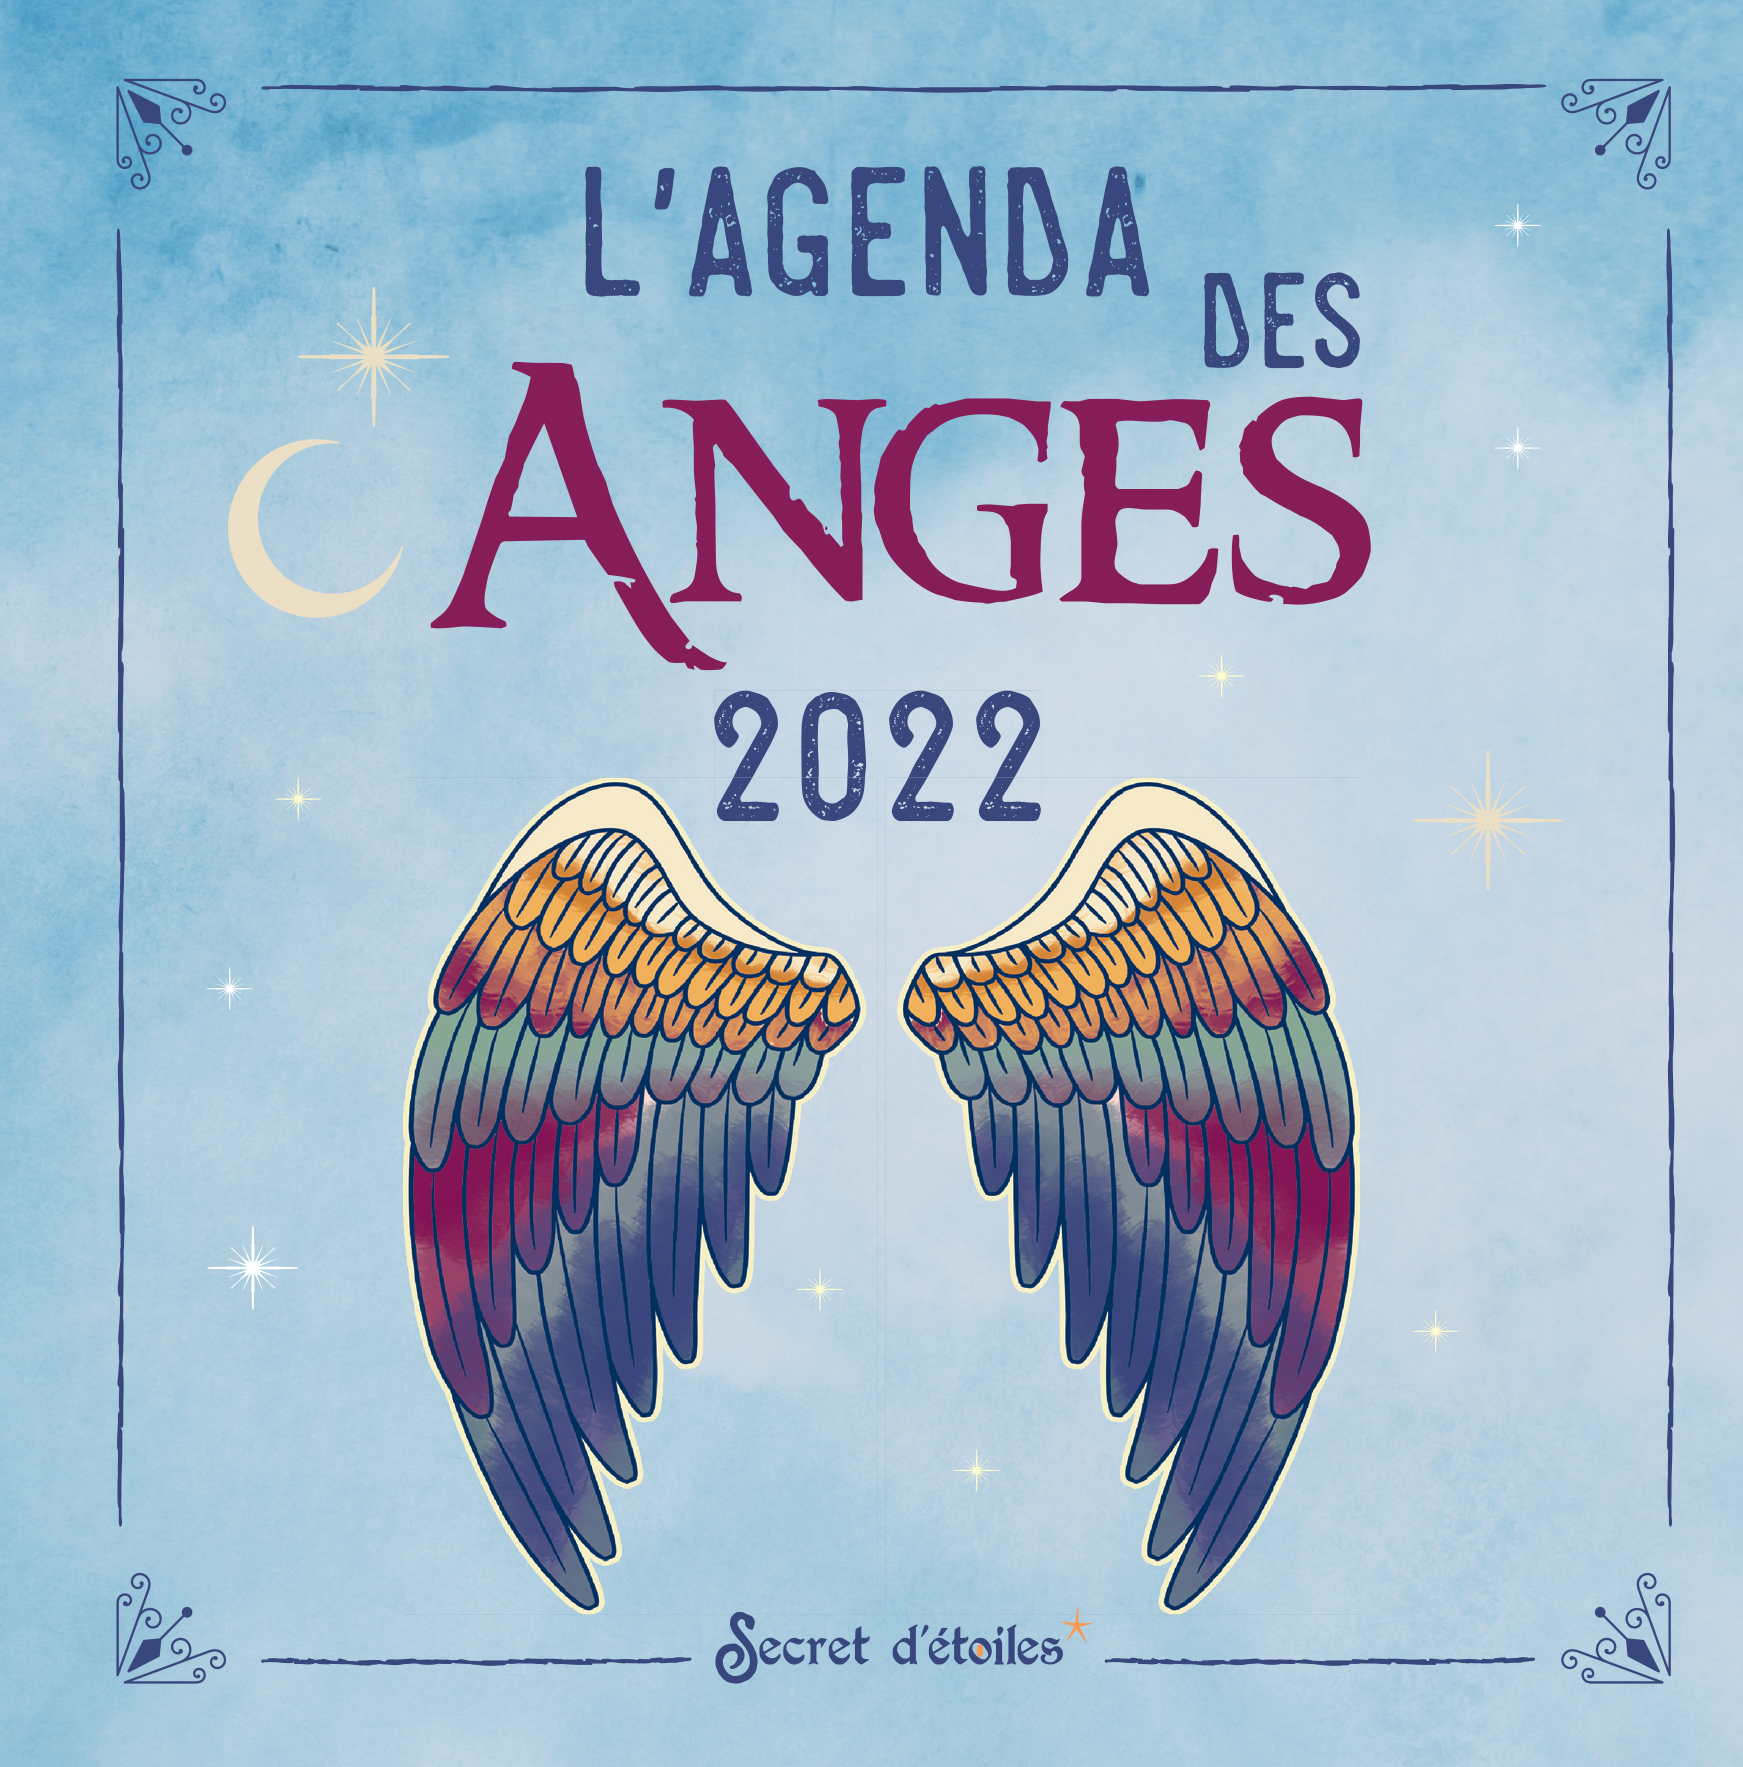 Agenda des anges 2018 